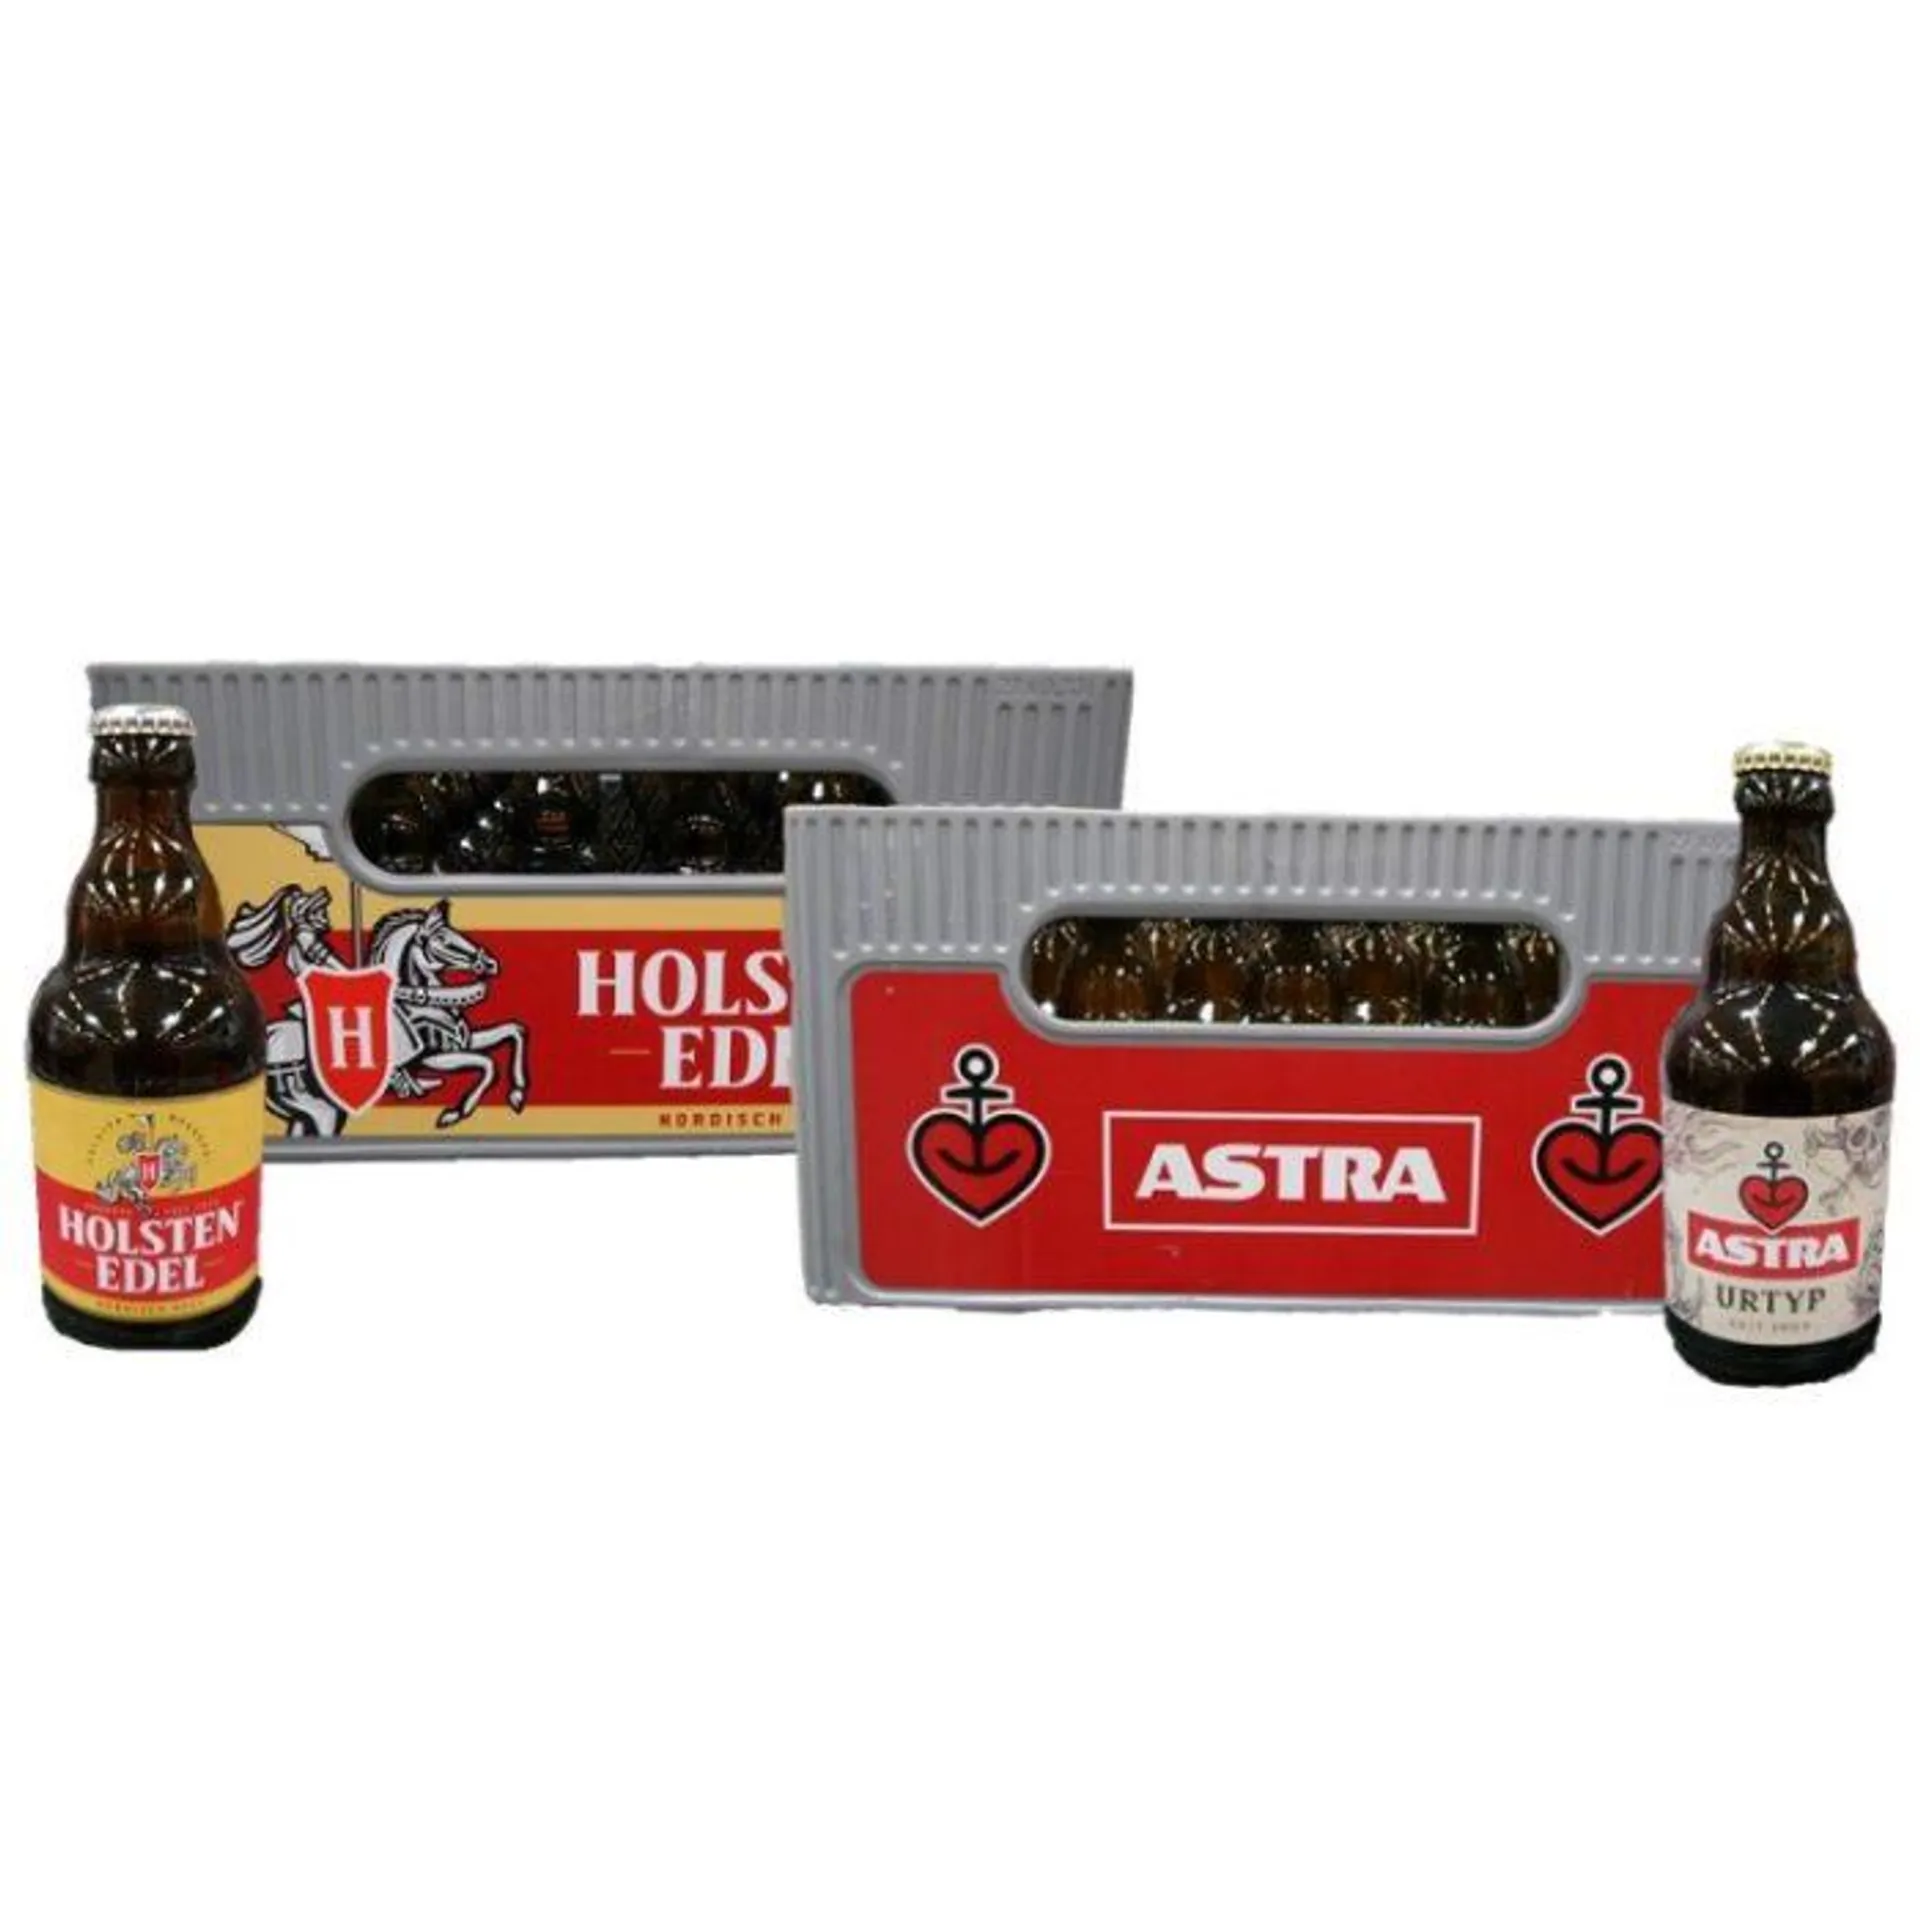 Holsten Edel Bier oder Astra Urtyp (27×0,33l)